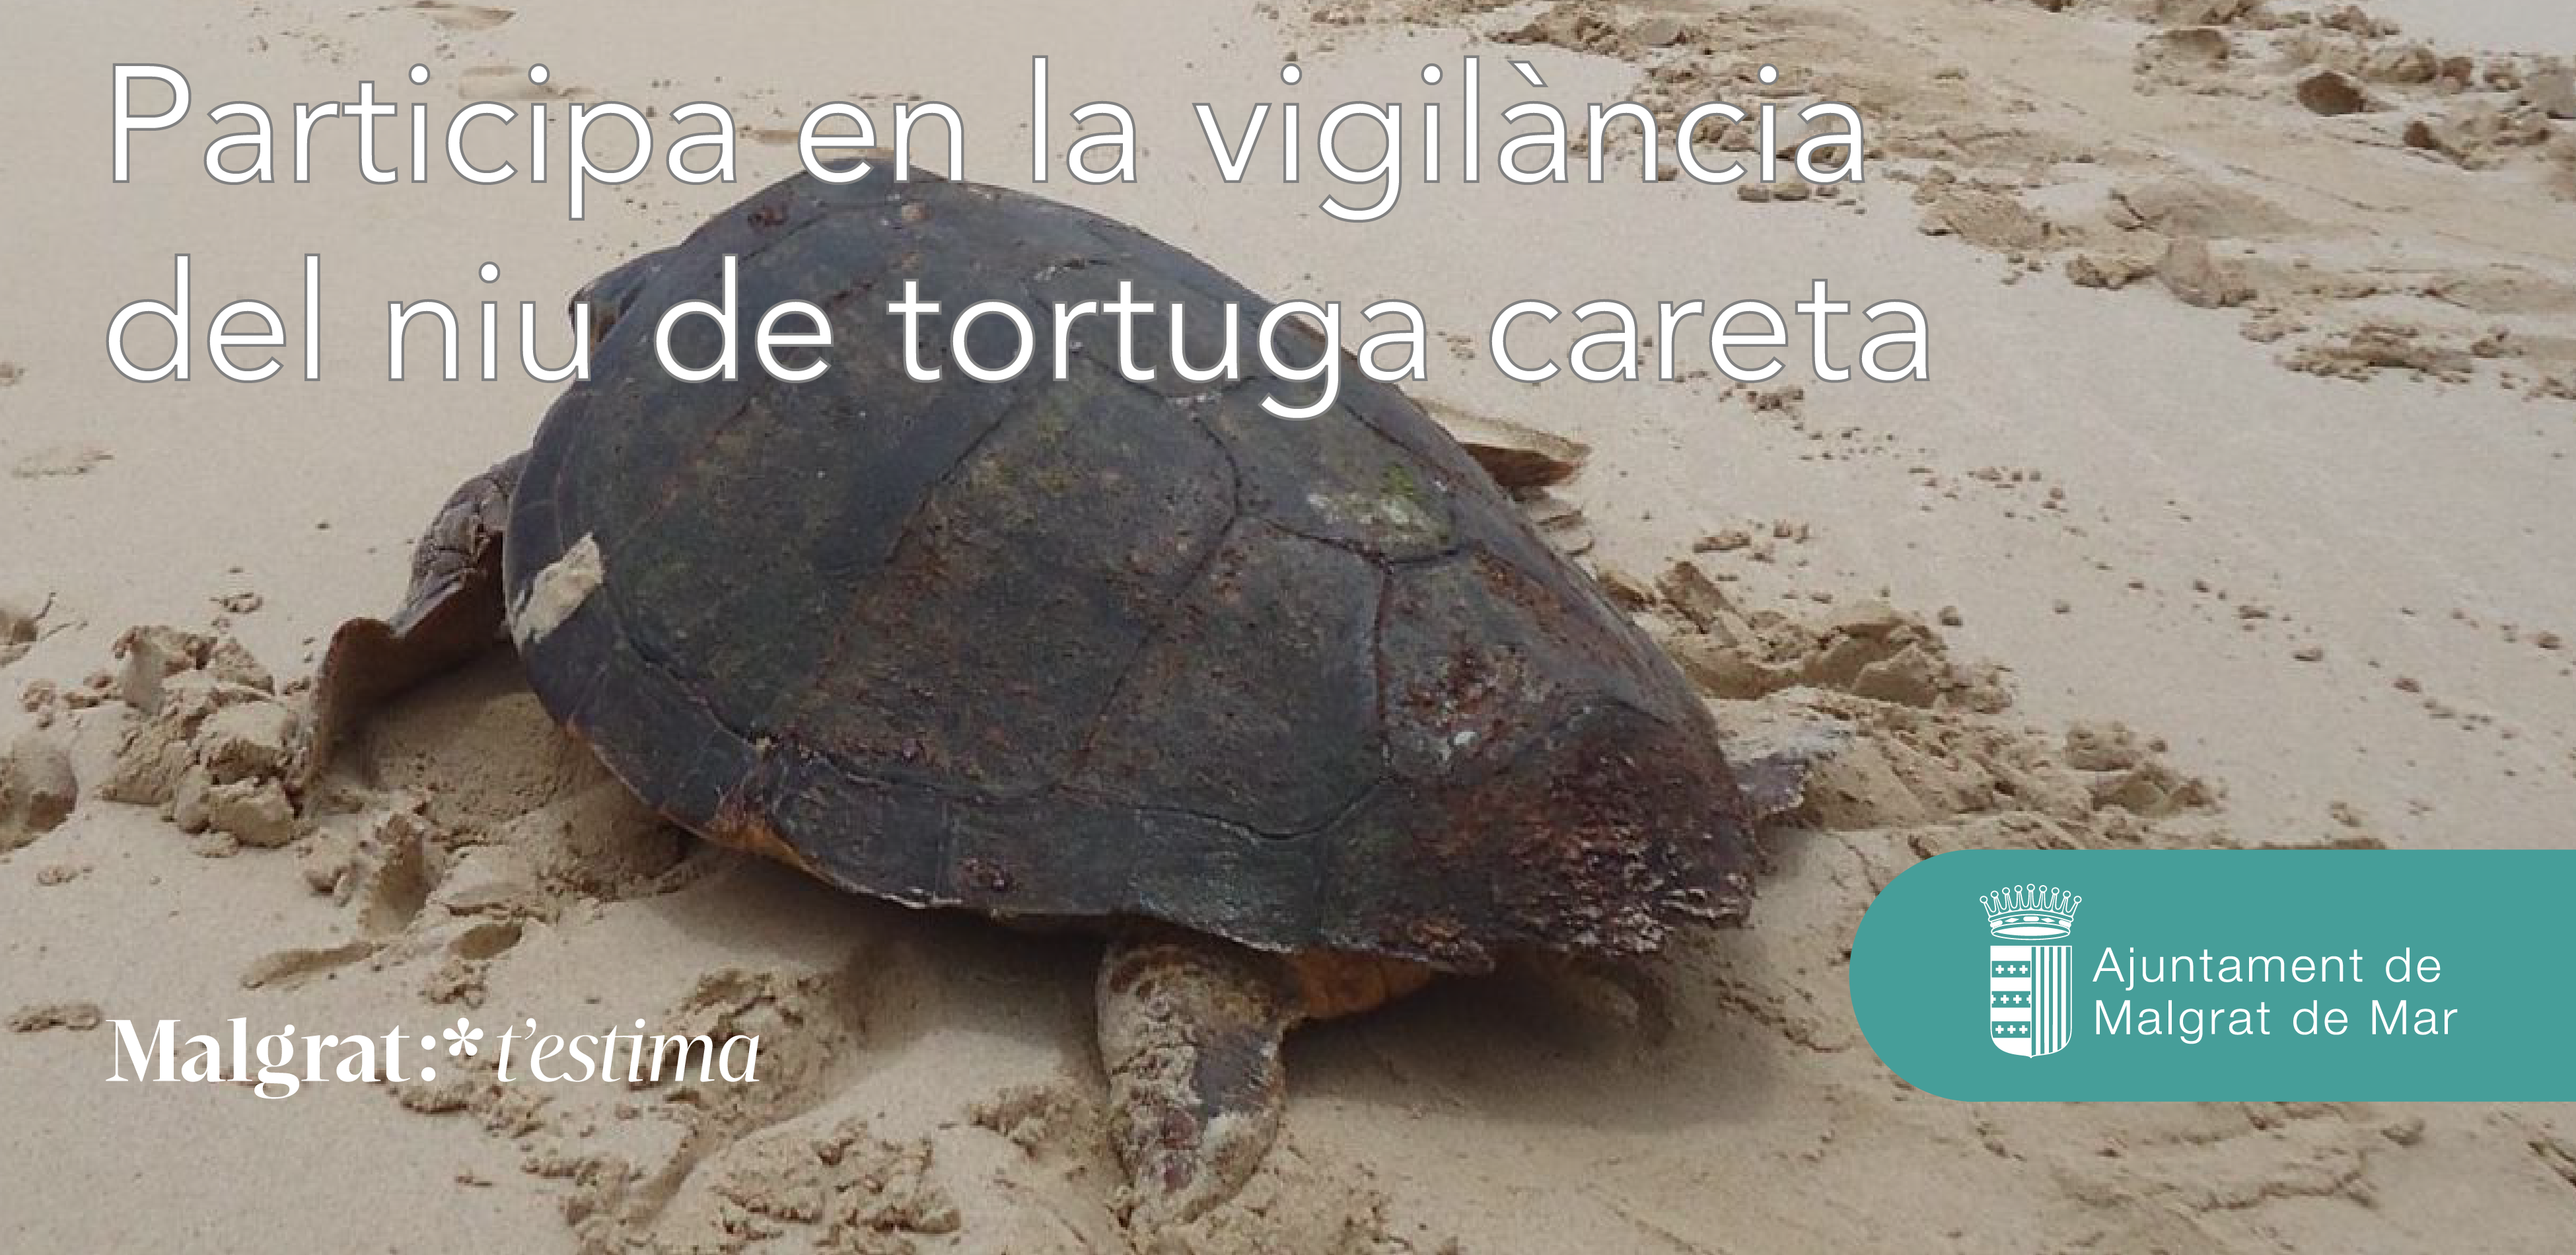 Sostenibilitat cerca voluntaris per tenir cura del niu de tortuga careta